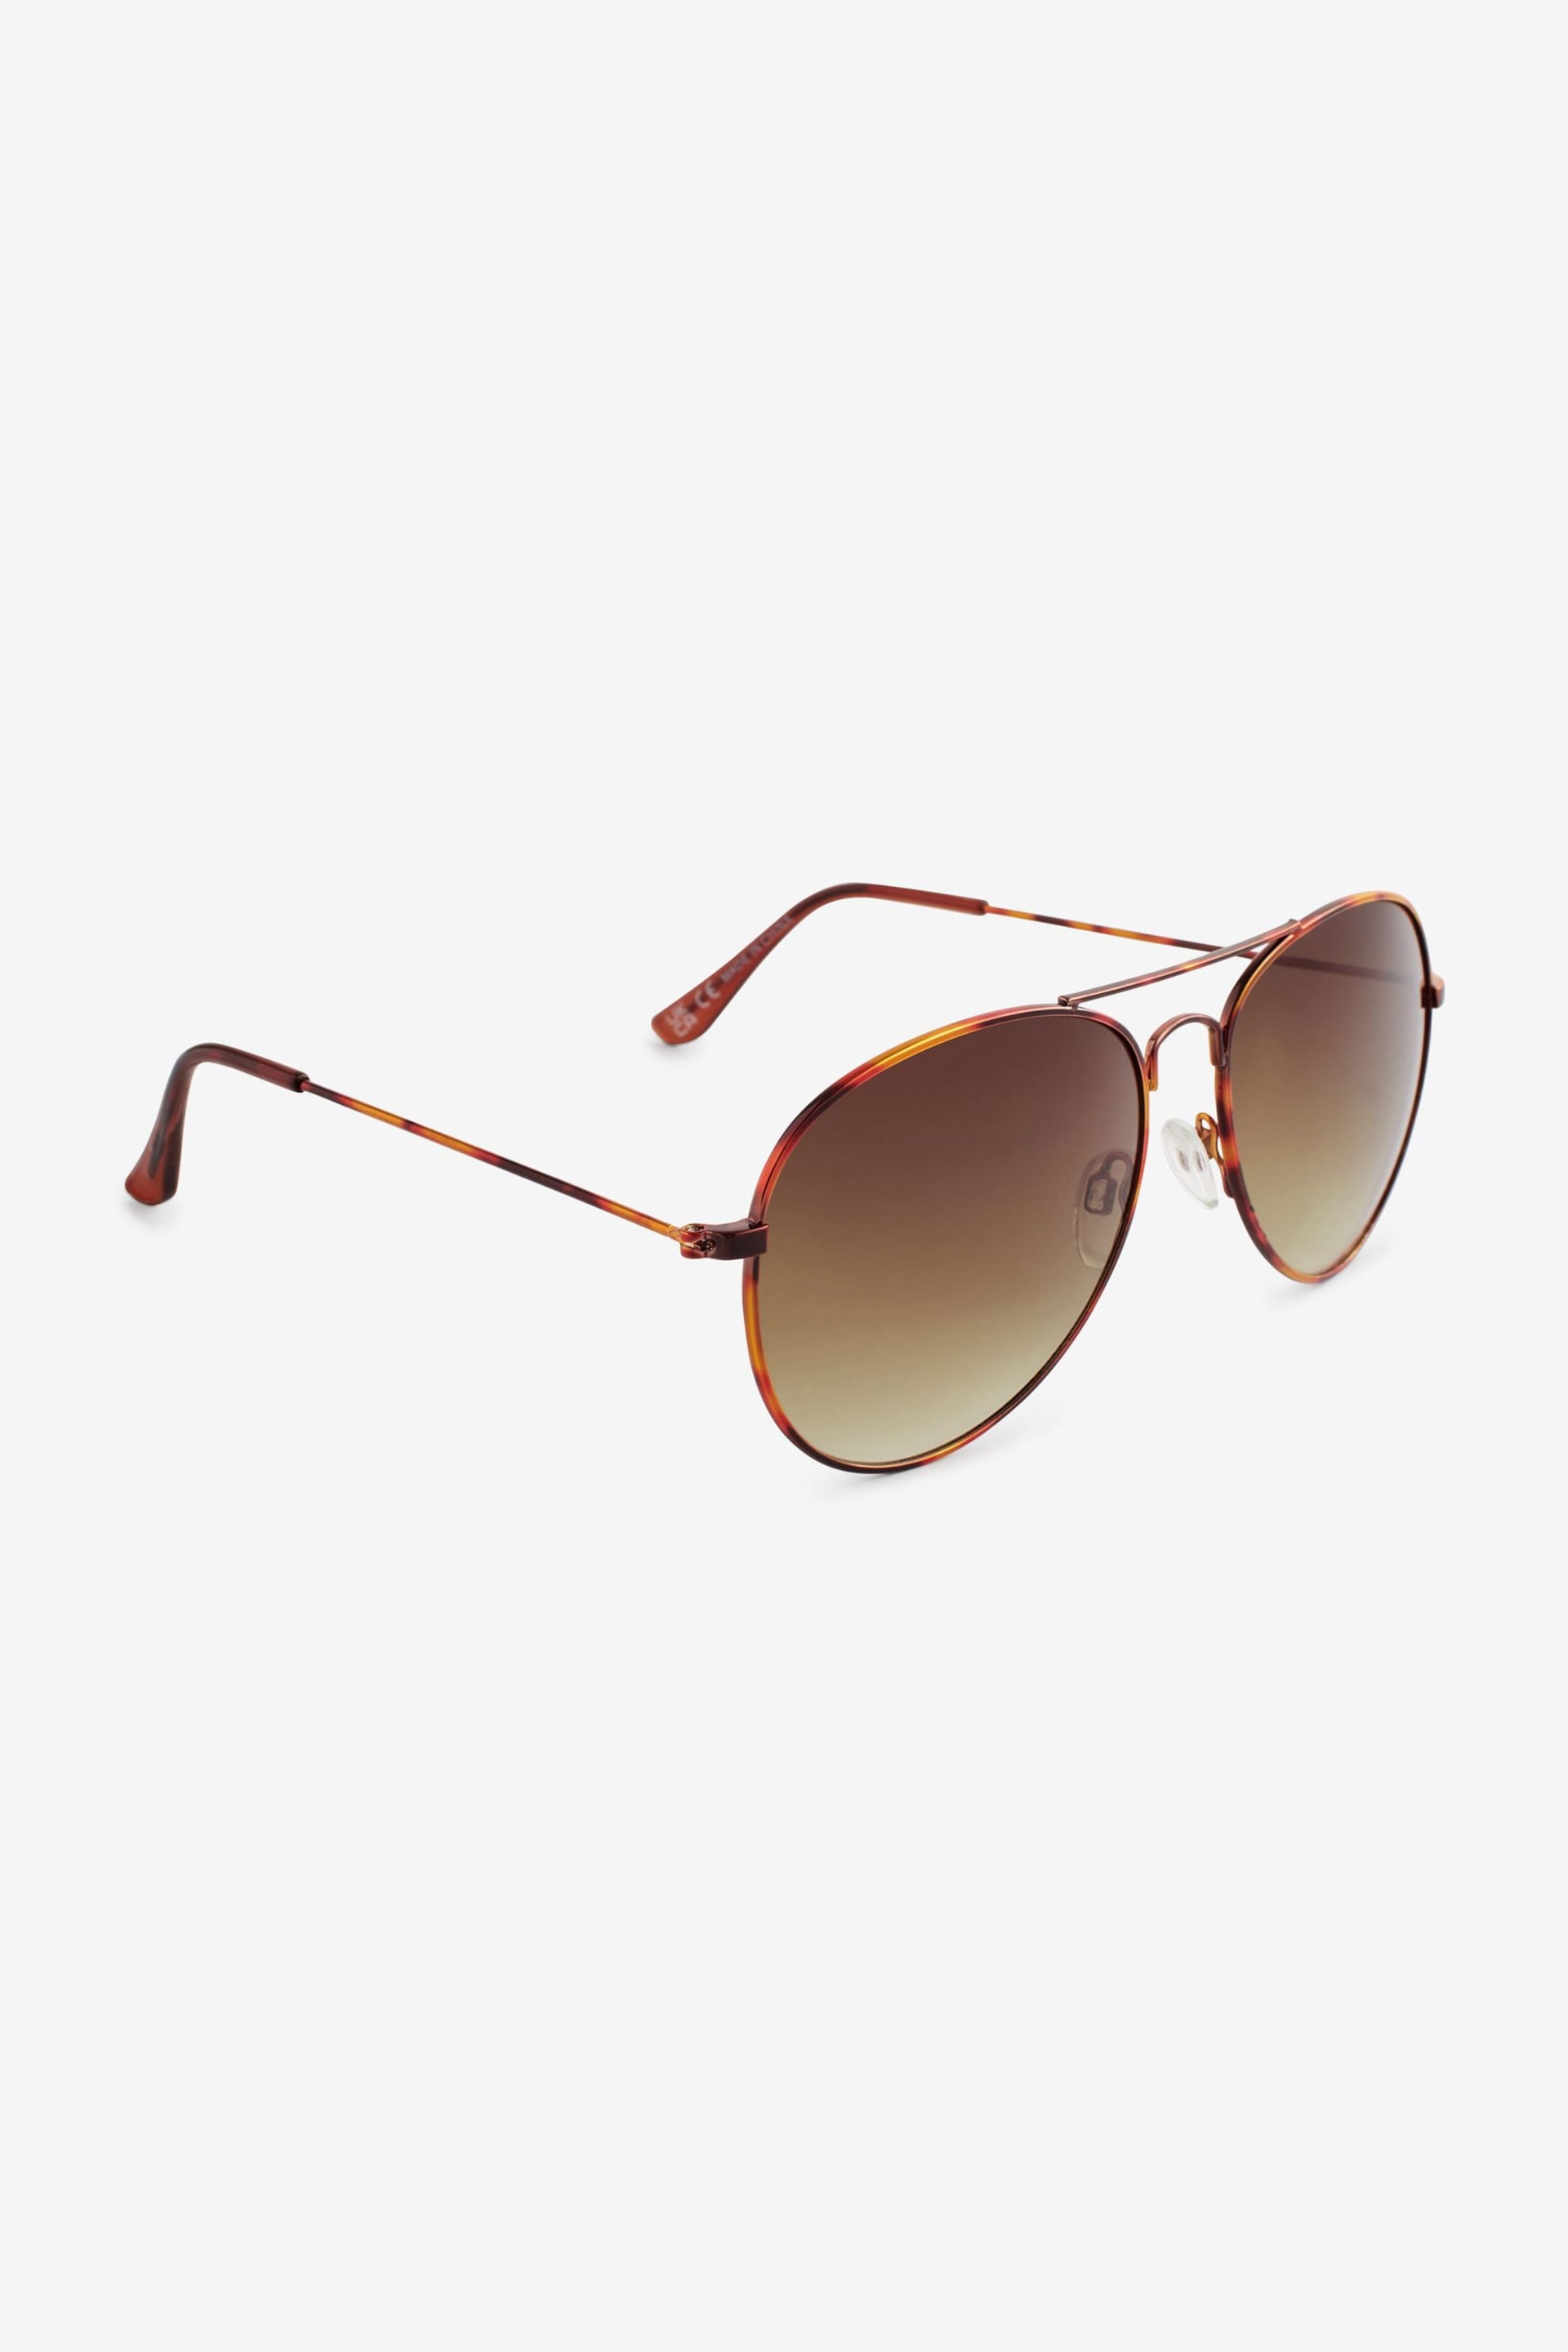 Tortoiseshell Brown Classic Aviator Style Sunglasses - Image 3 of 6